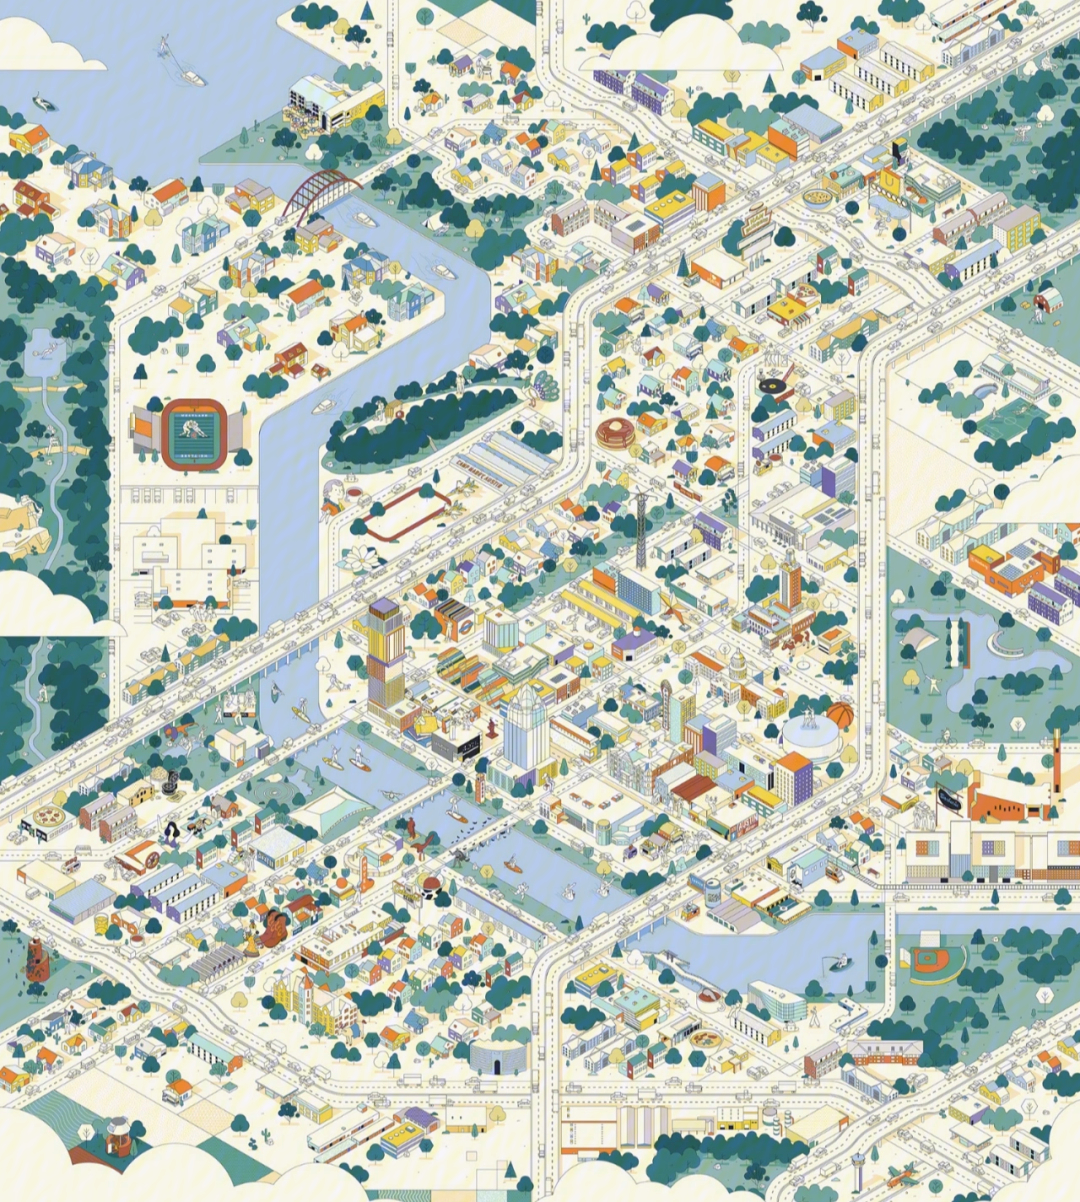 城市设计插画风格的图纸表现